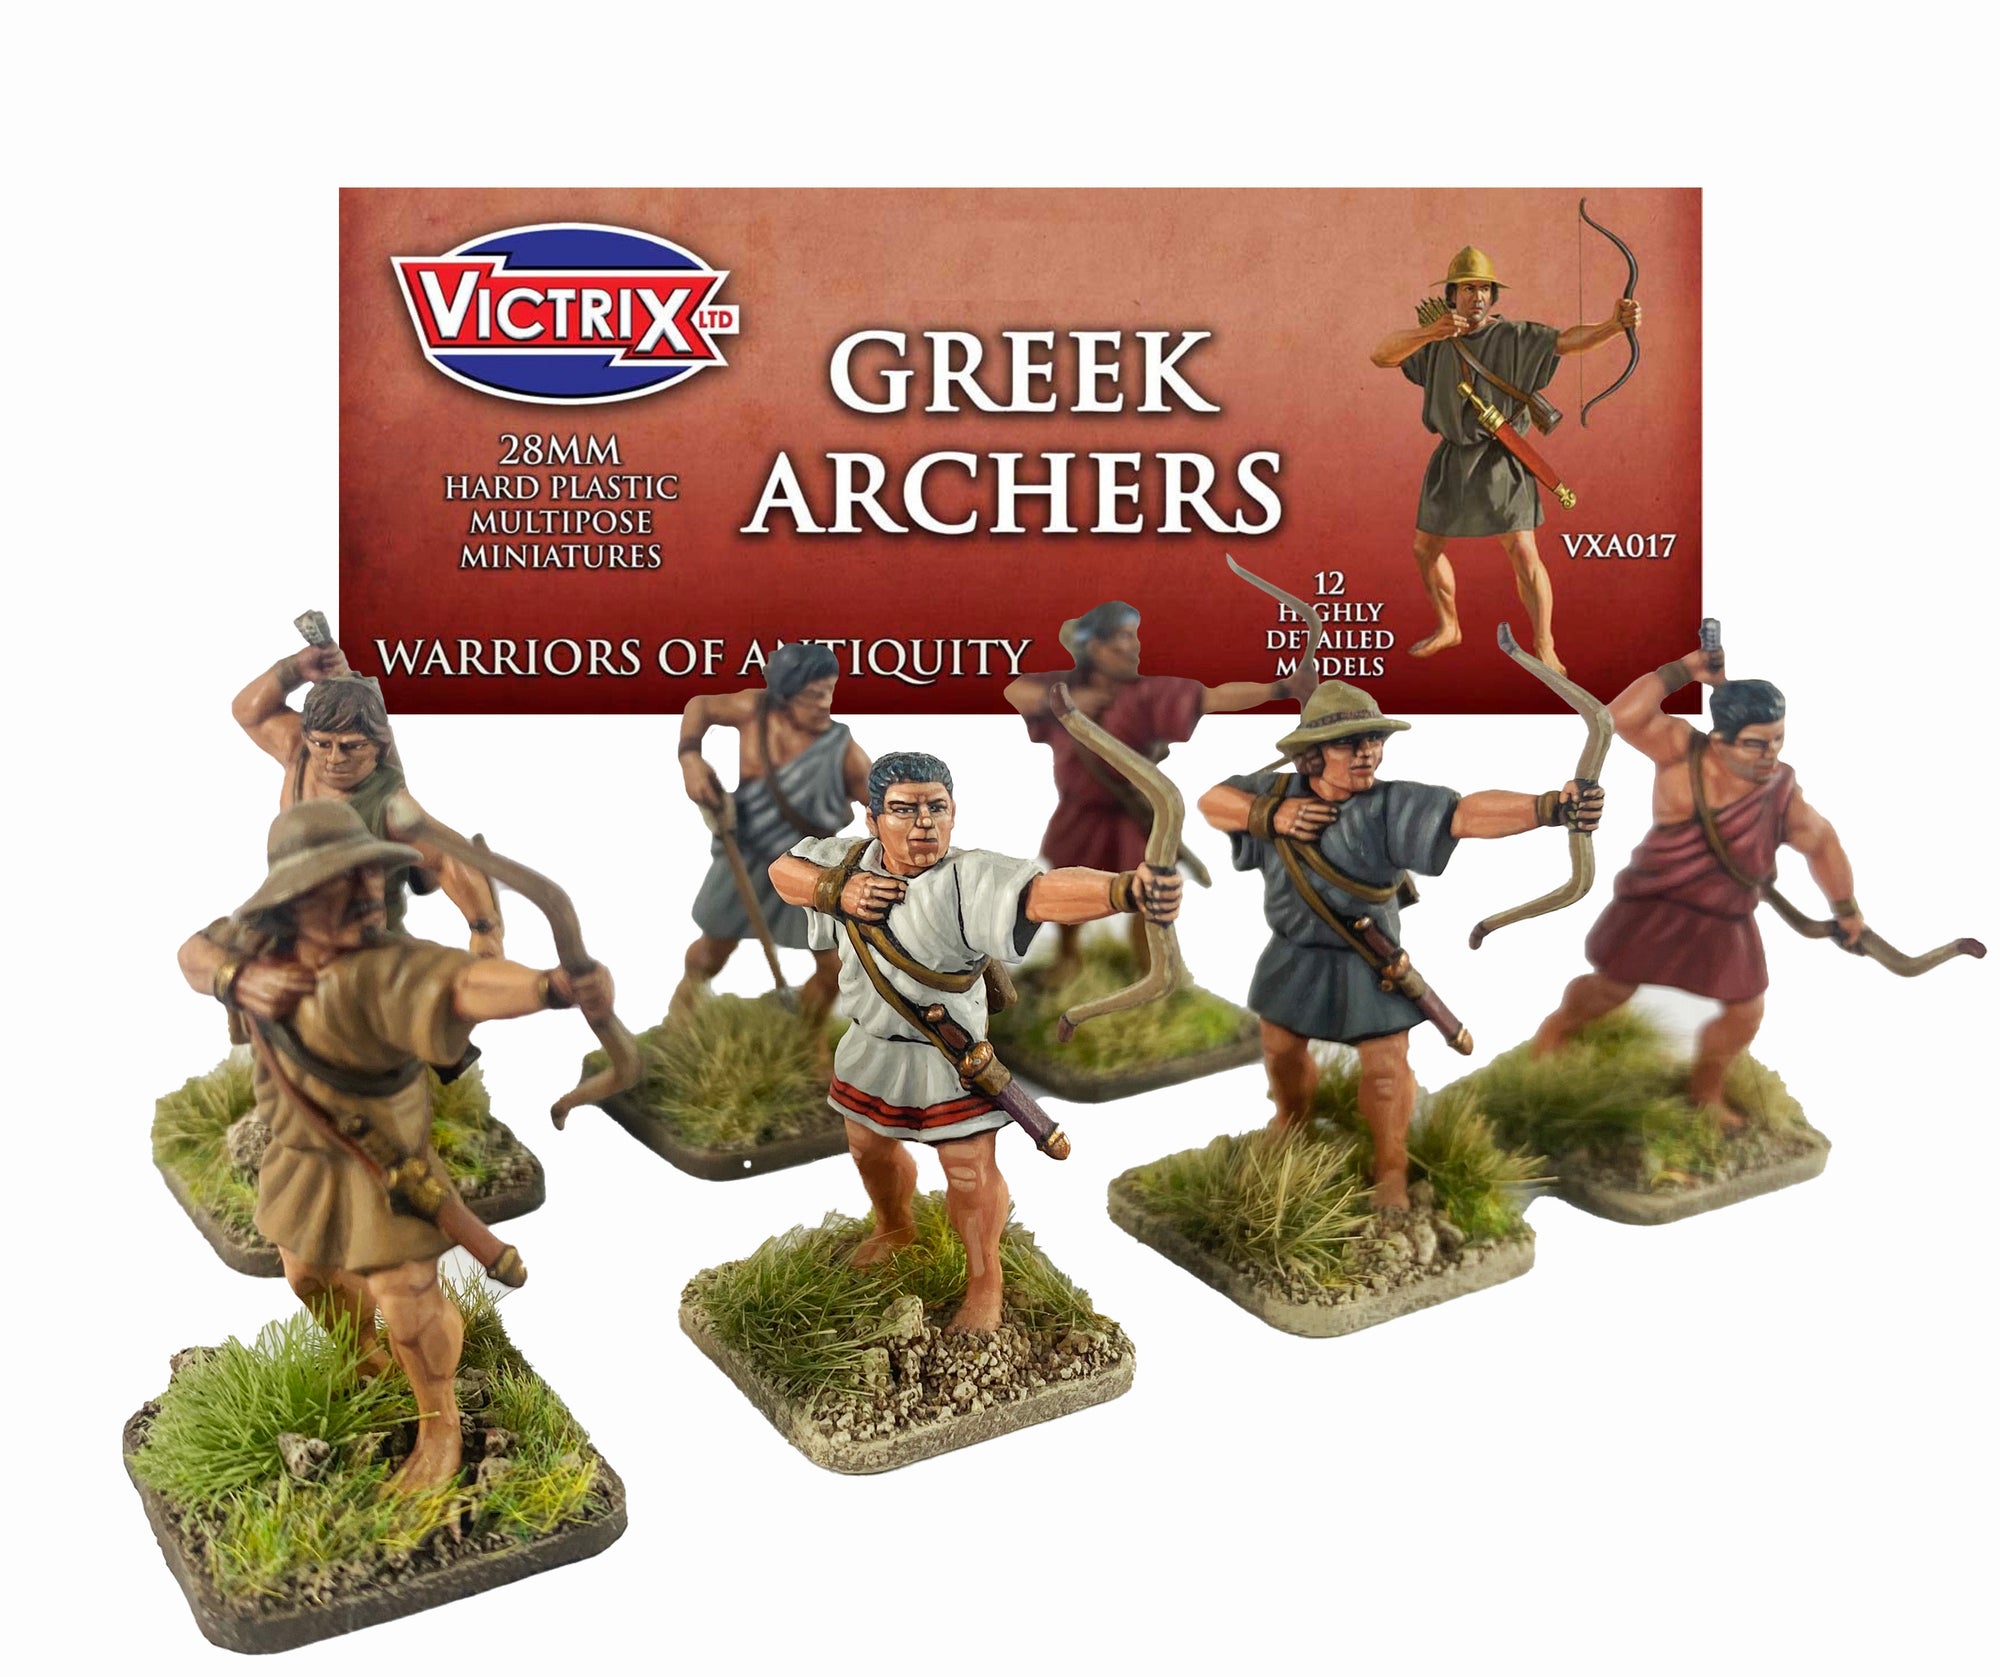 Paquete de refuerzo de Archer griego